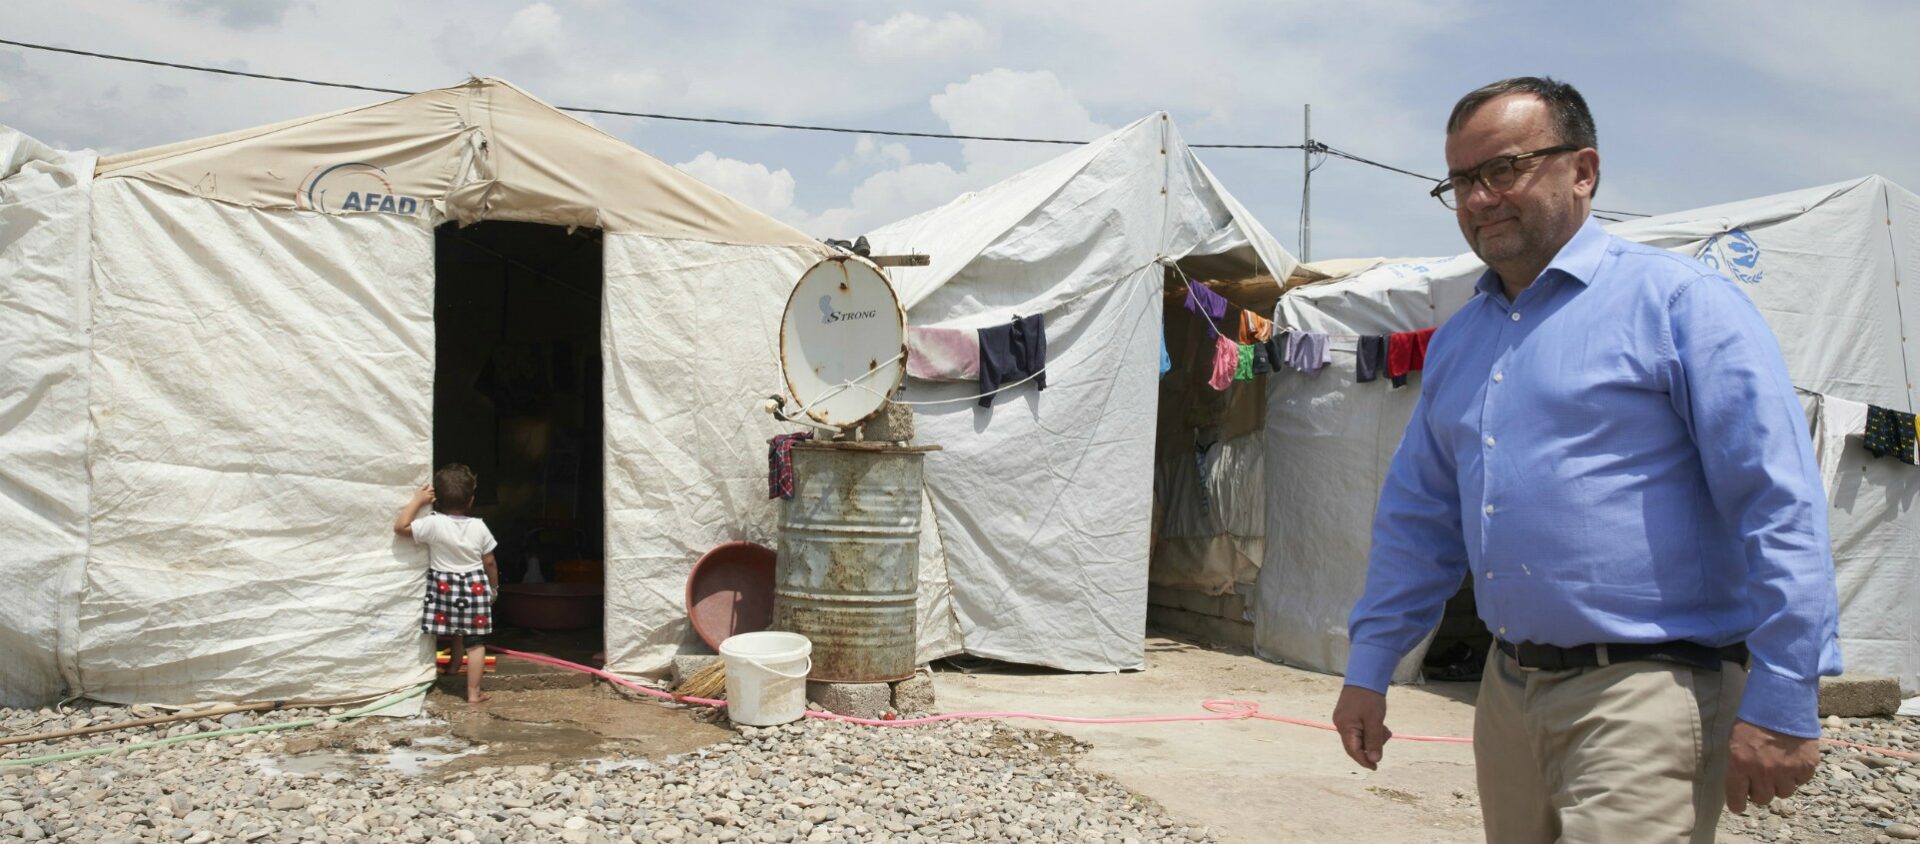 Le Père Patrick Desbois dans un camp de réfugiés yézidis | © www.yahadinunum.org